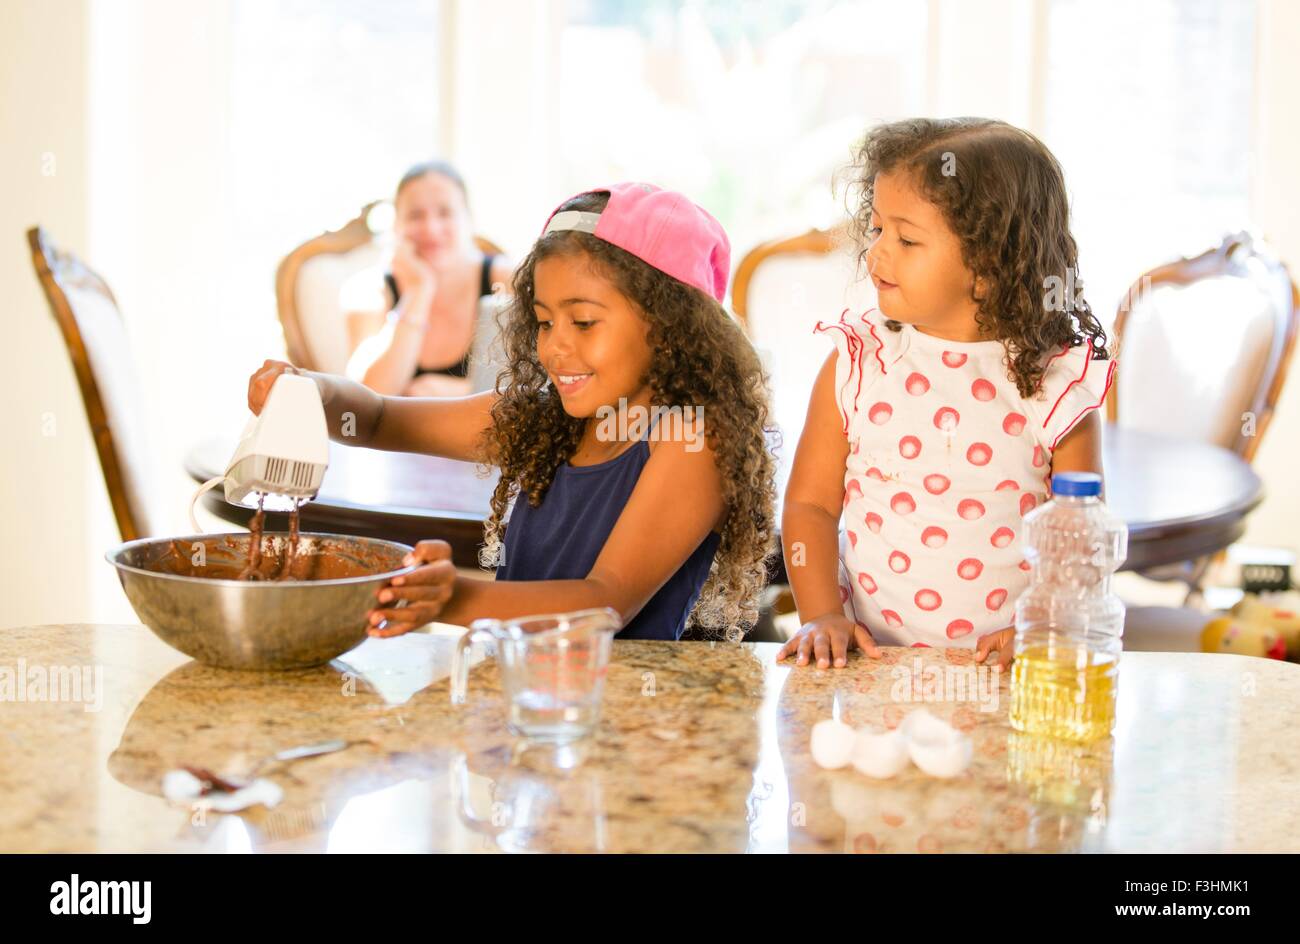 Schwestern am Küchentisch Quirlen Choclate Cake mix in Rührschüssel blickte lächelnd Stockfoto